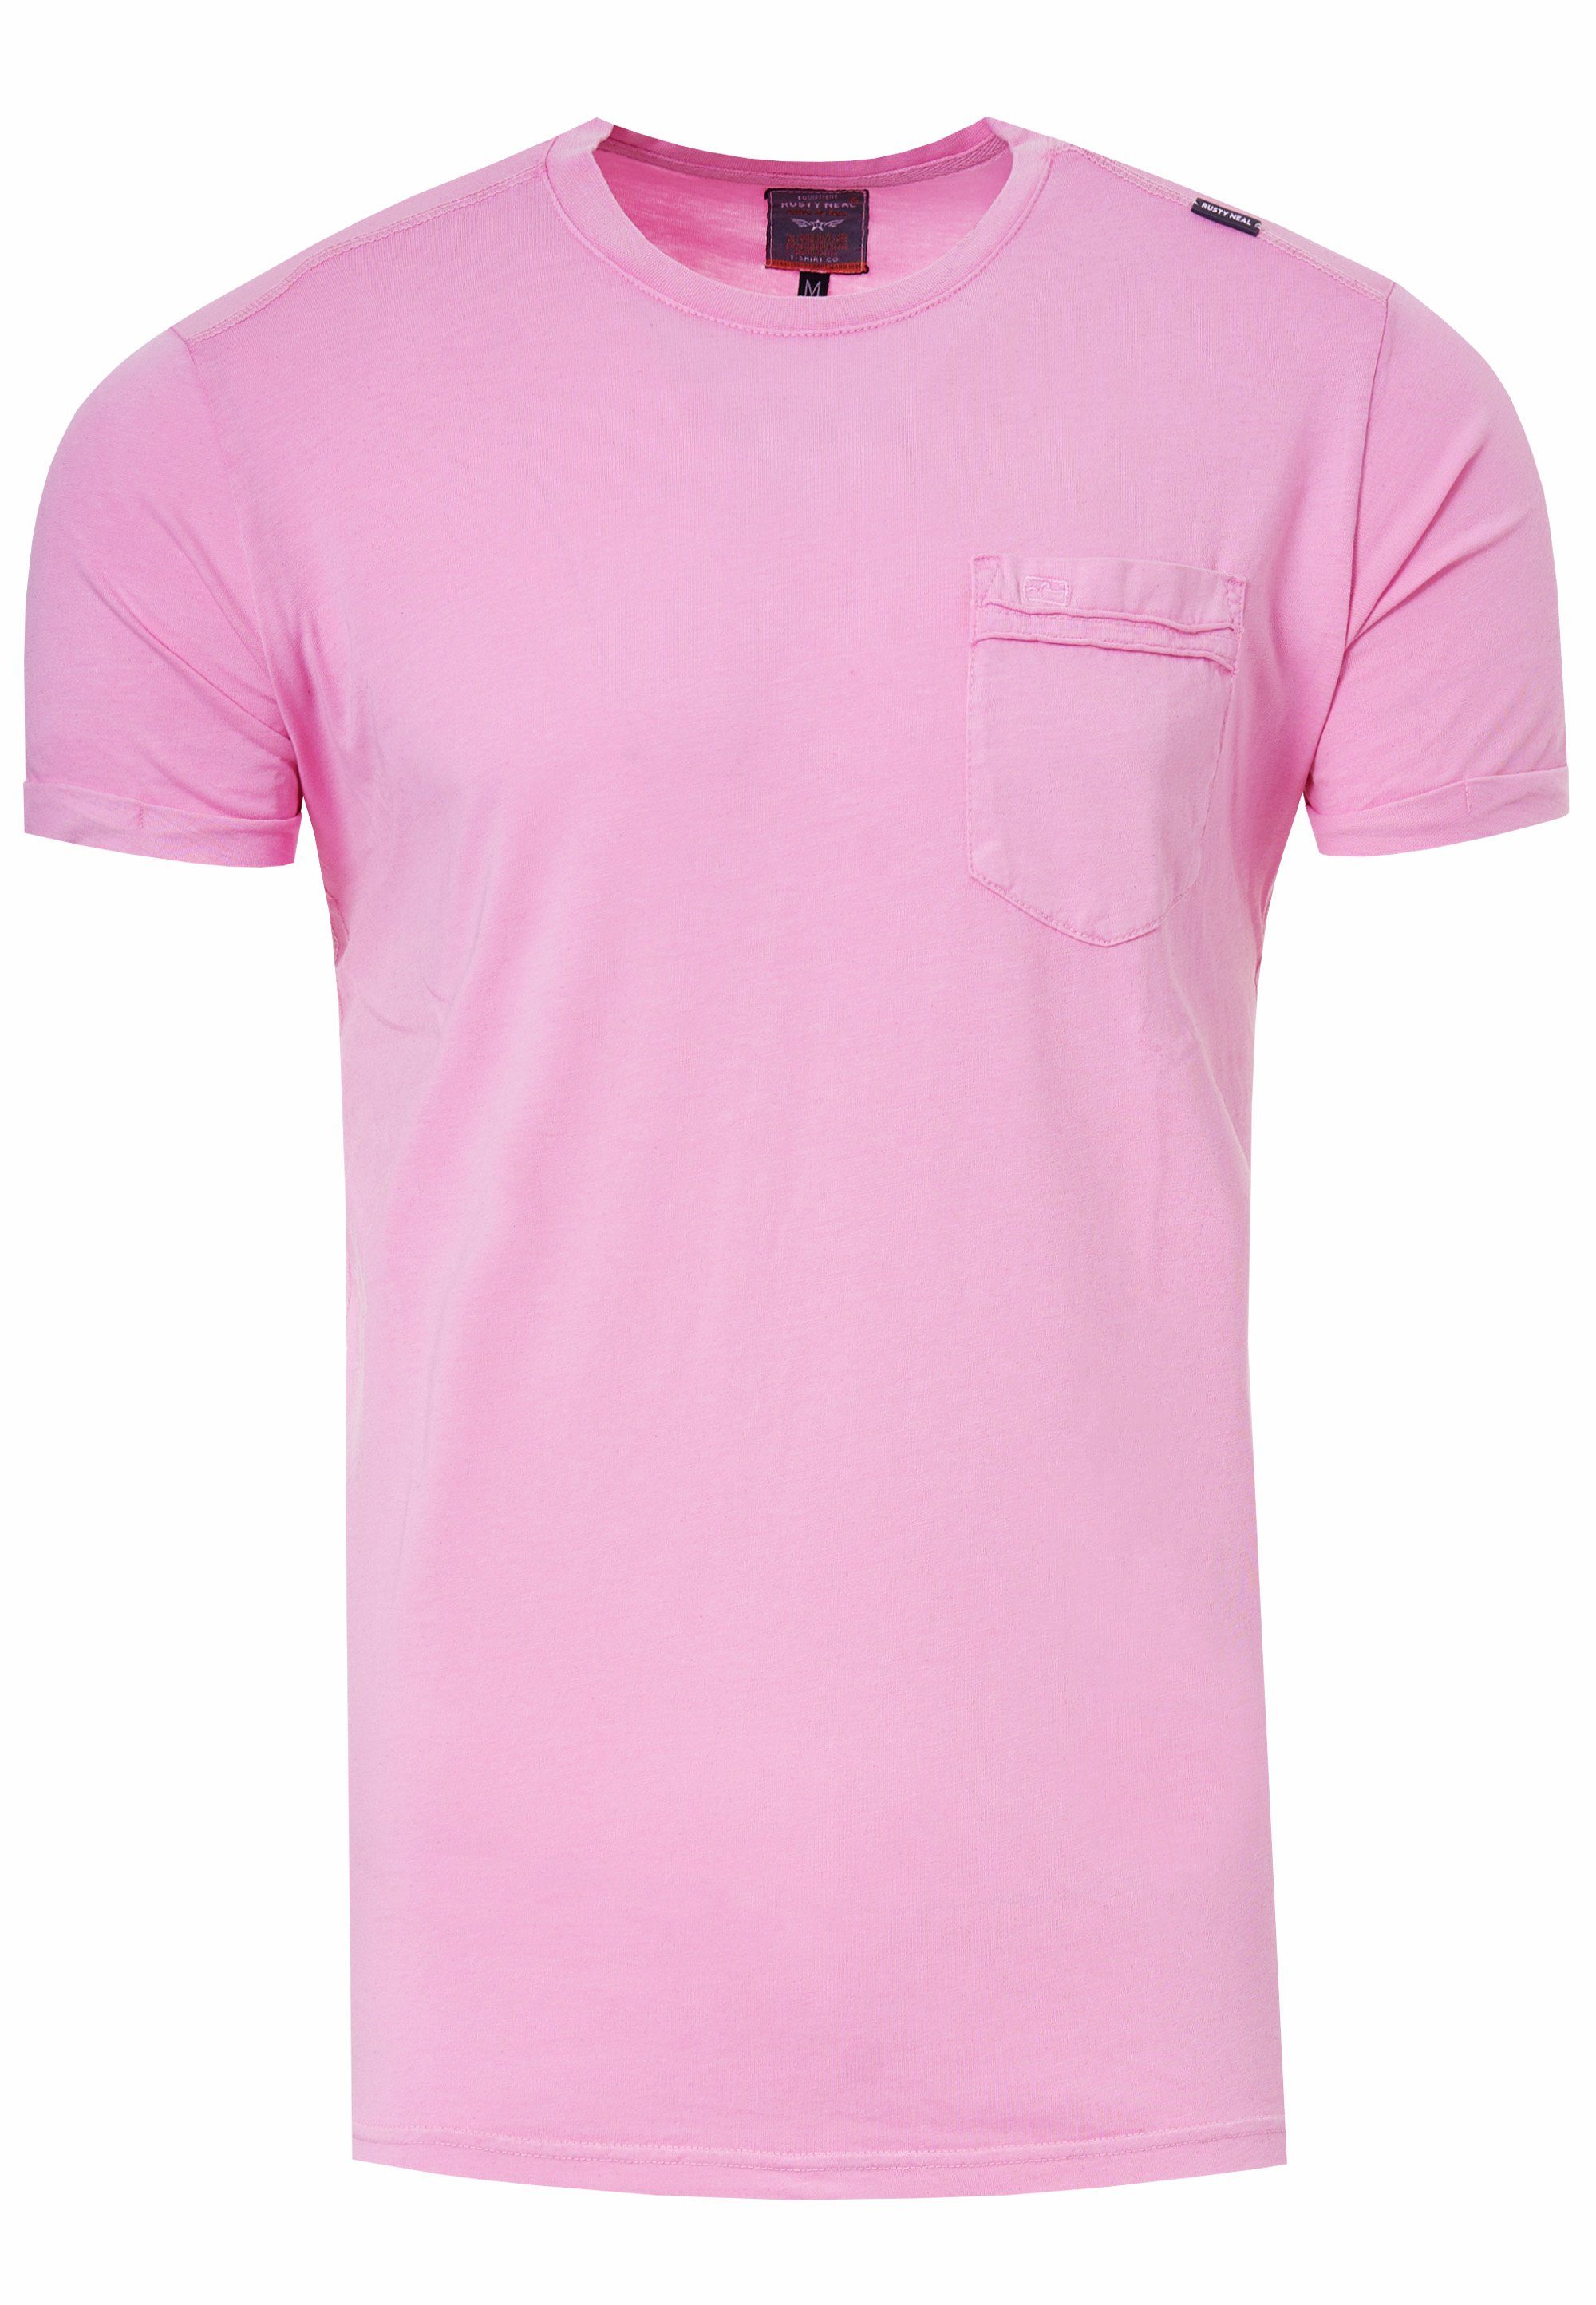 Rusty Neal T-Shirt mit aufgesetzter rosa Brusttasche